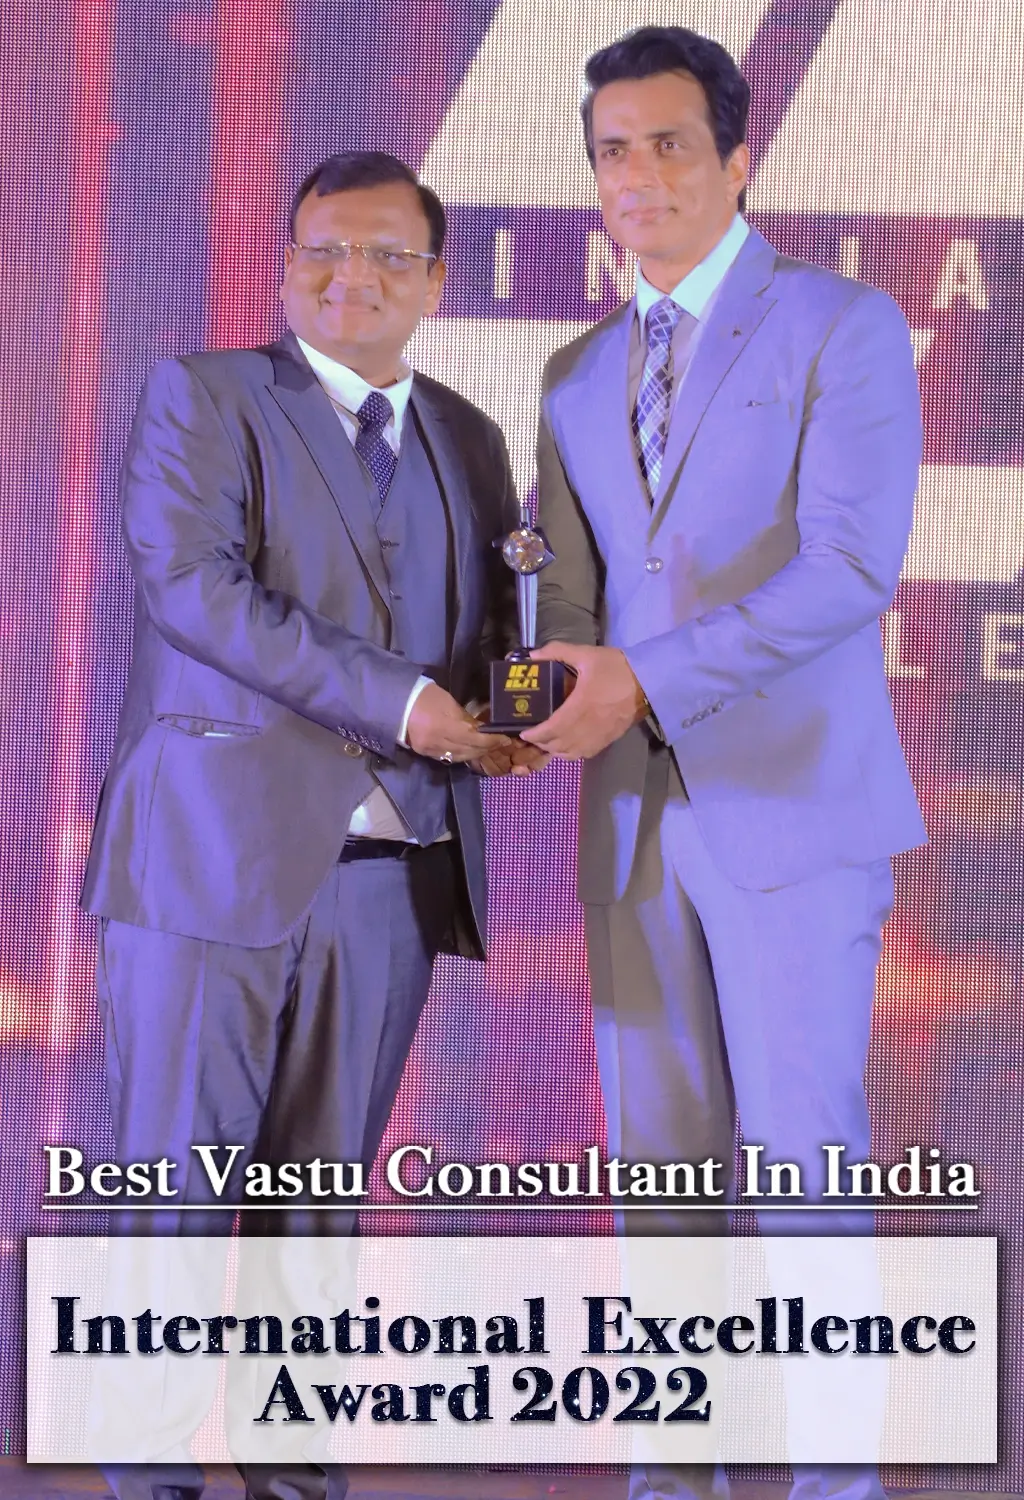 Best Vastu Consultant in India 2022